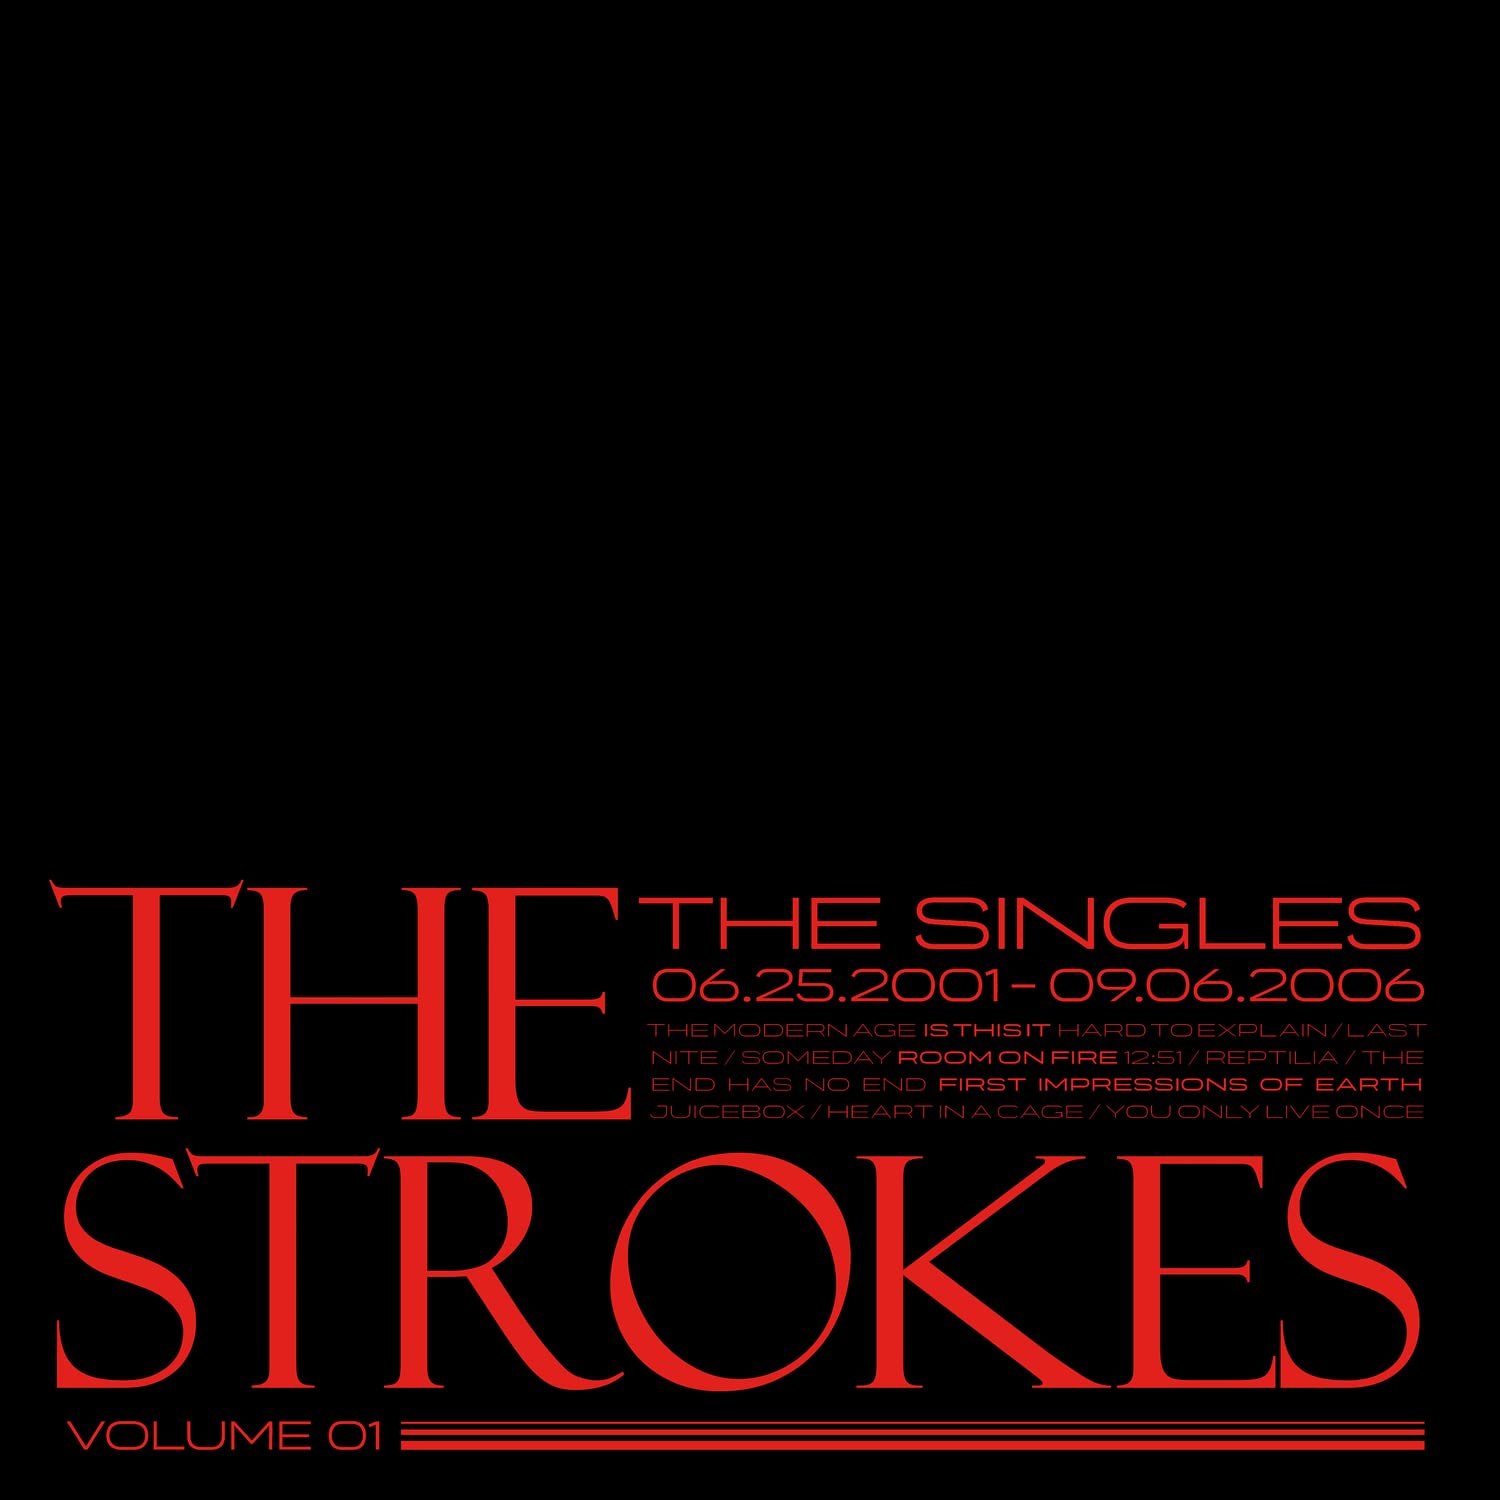 The Strokes - The singles vol 1